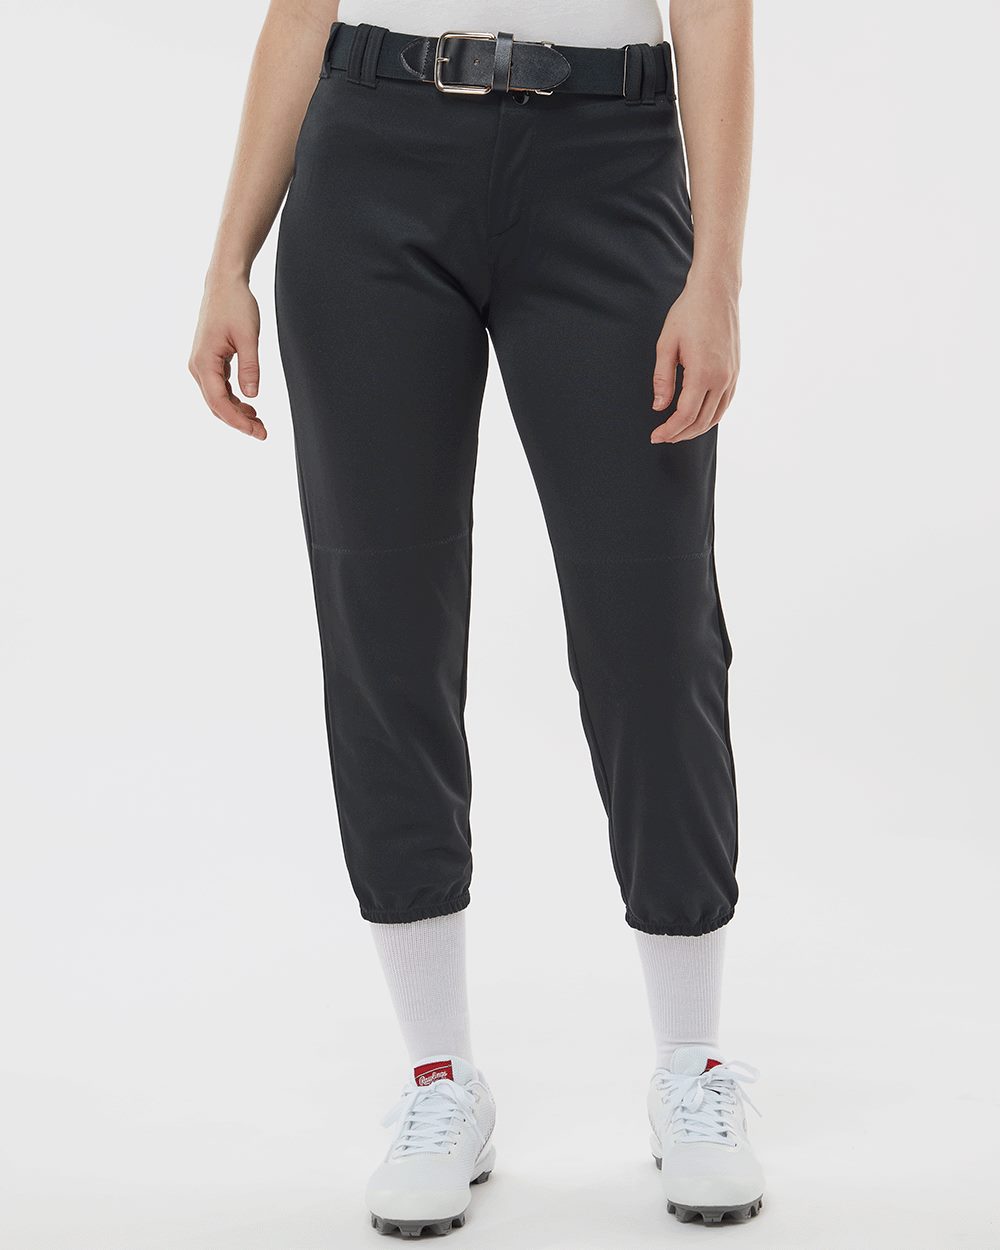  Women's Athletic Pants - XS / Women's Athletic Pants